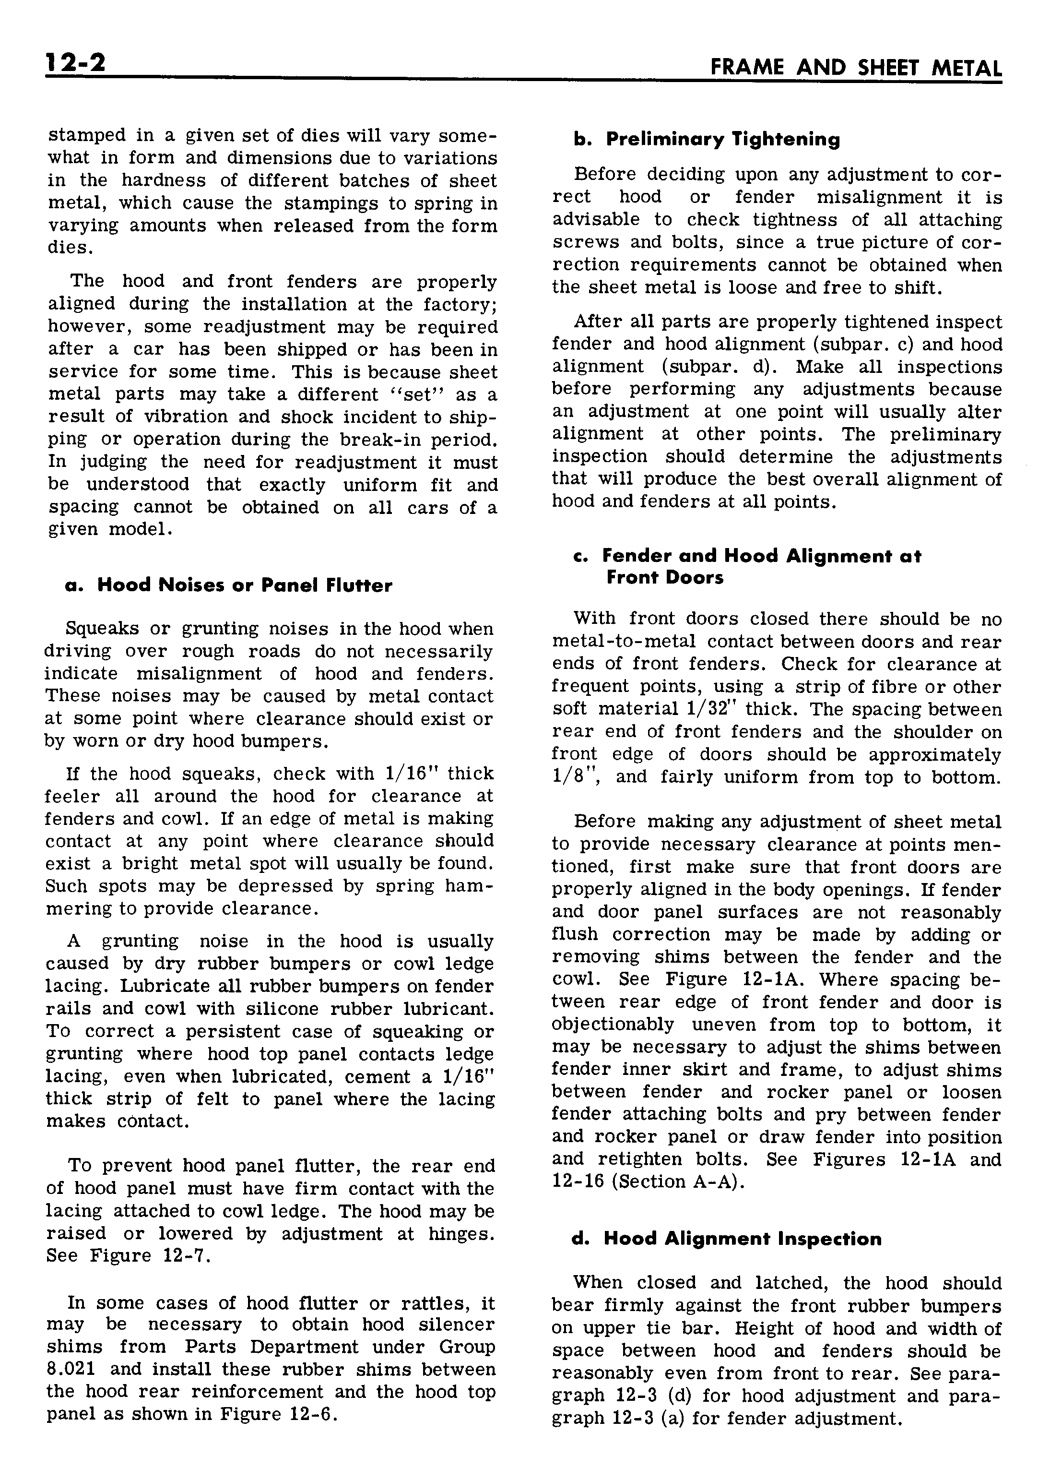 n_12 1961 Buick Shop Manual - Frame & Sheet Metal-002-002.jpg